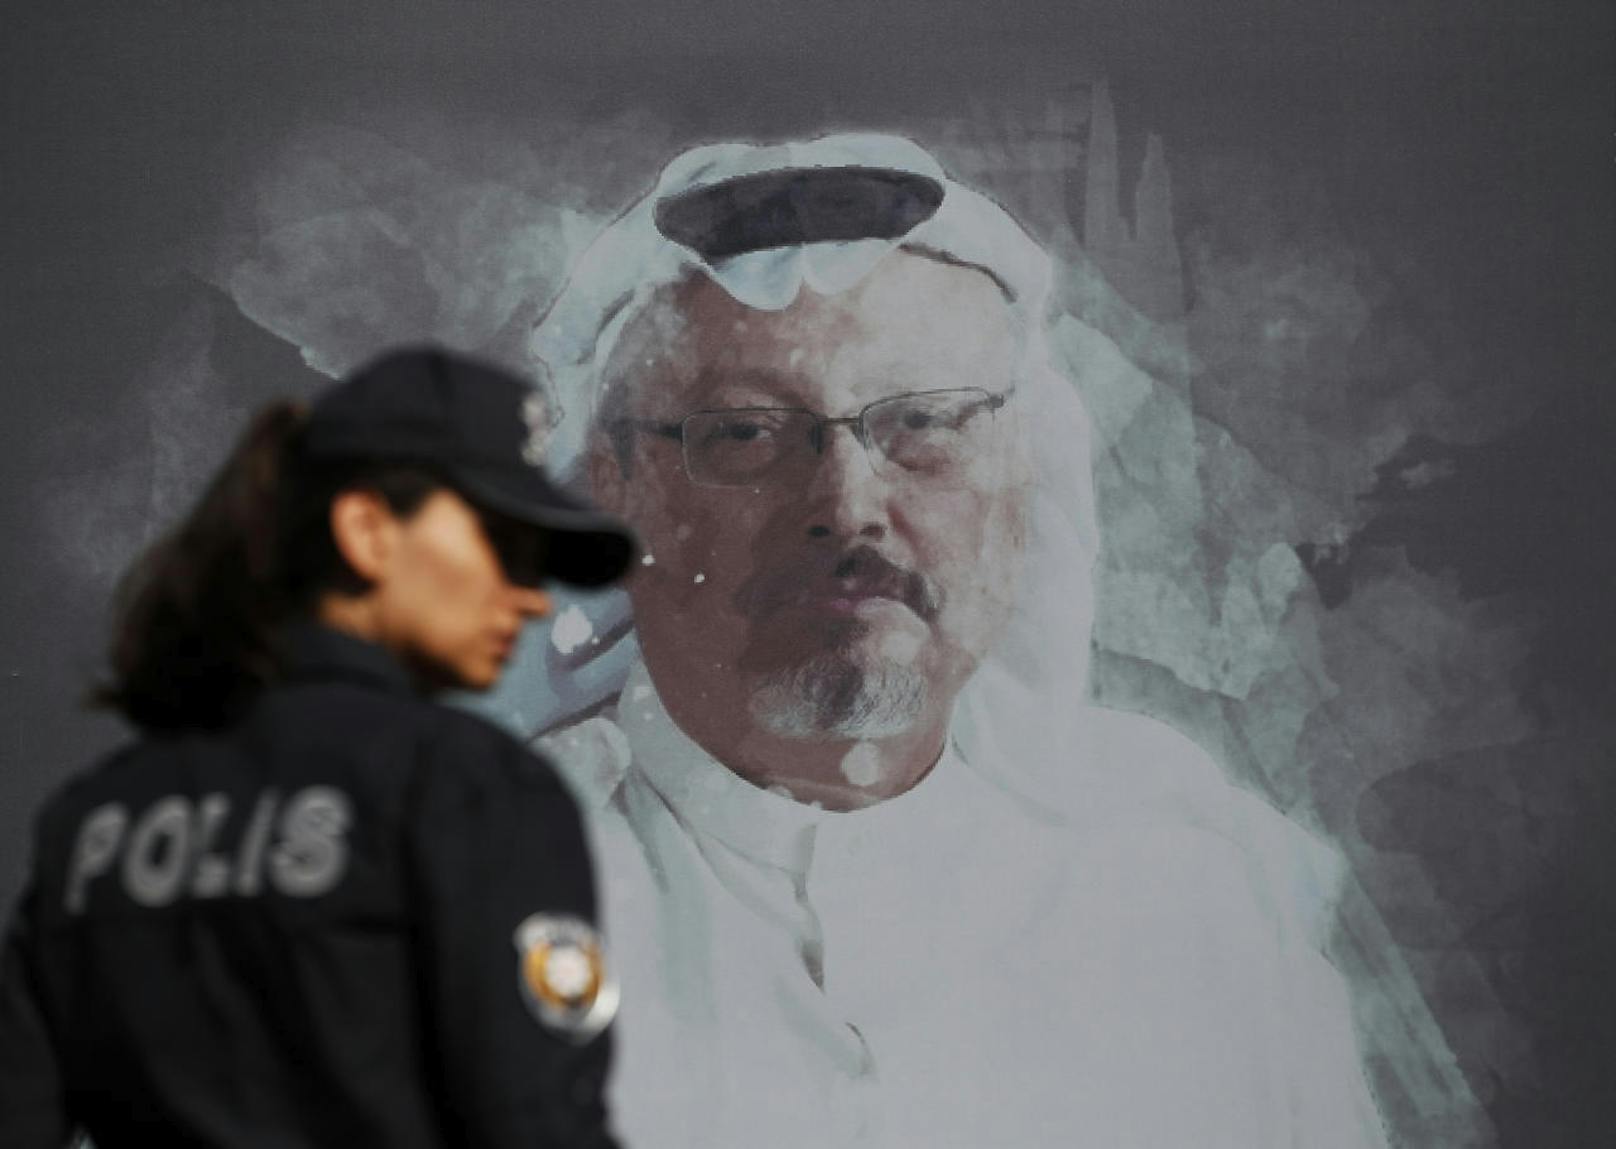 Der berüchtigste Fall: Der saudische Journalist Jamal Khashoggi, der auch Kolumnist der "Washington Post" war, wurde unter einem Vorwand in die saudische Botschaft in der Türkei gelockt und dort brutal ermordet.